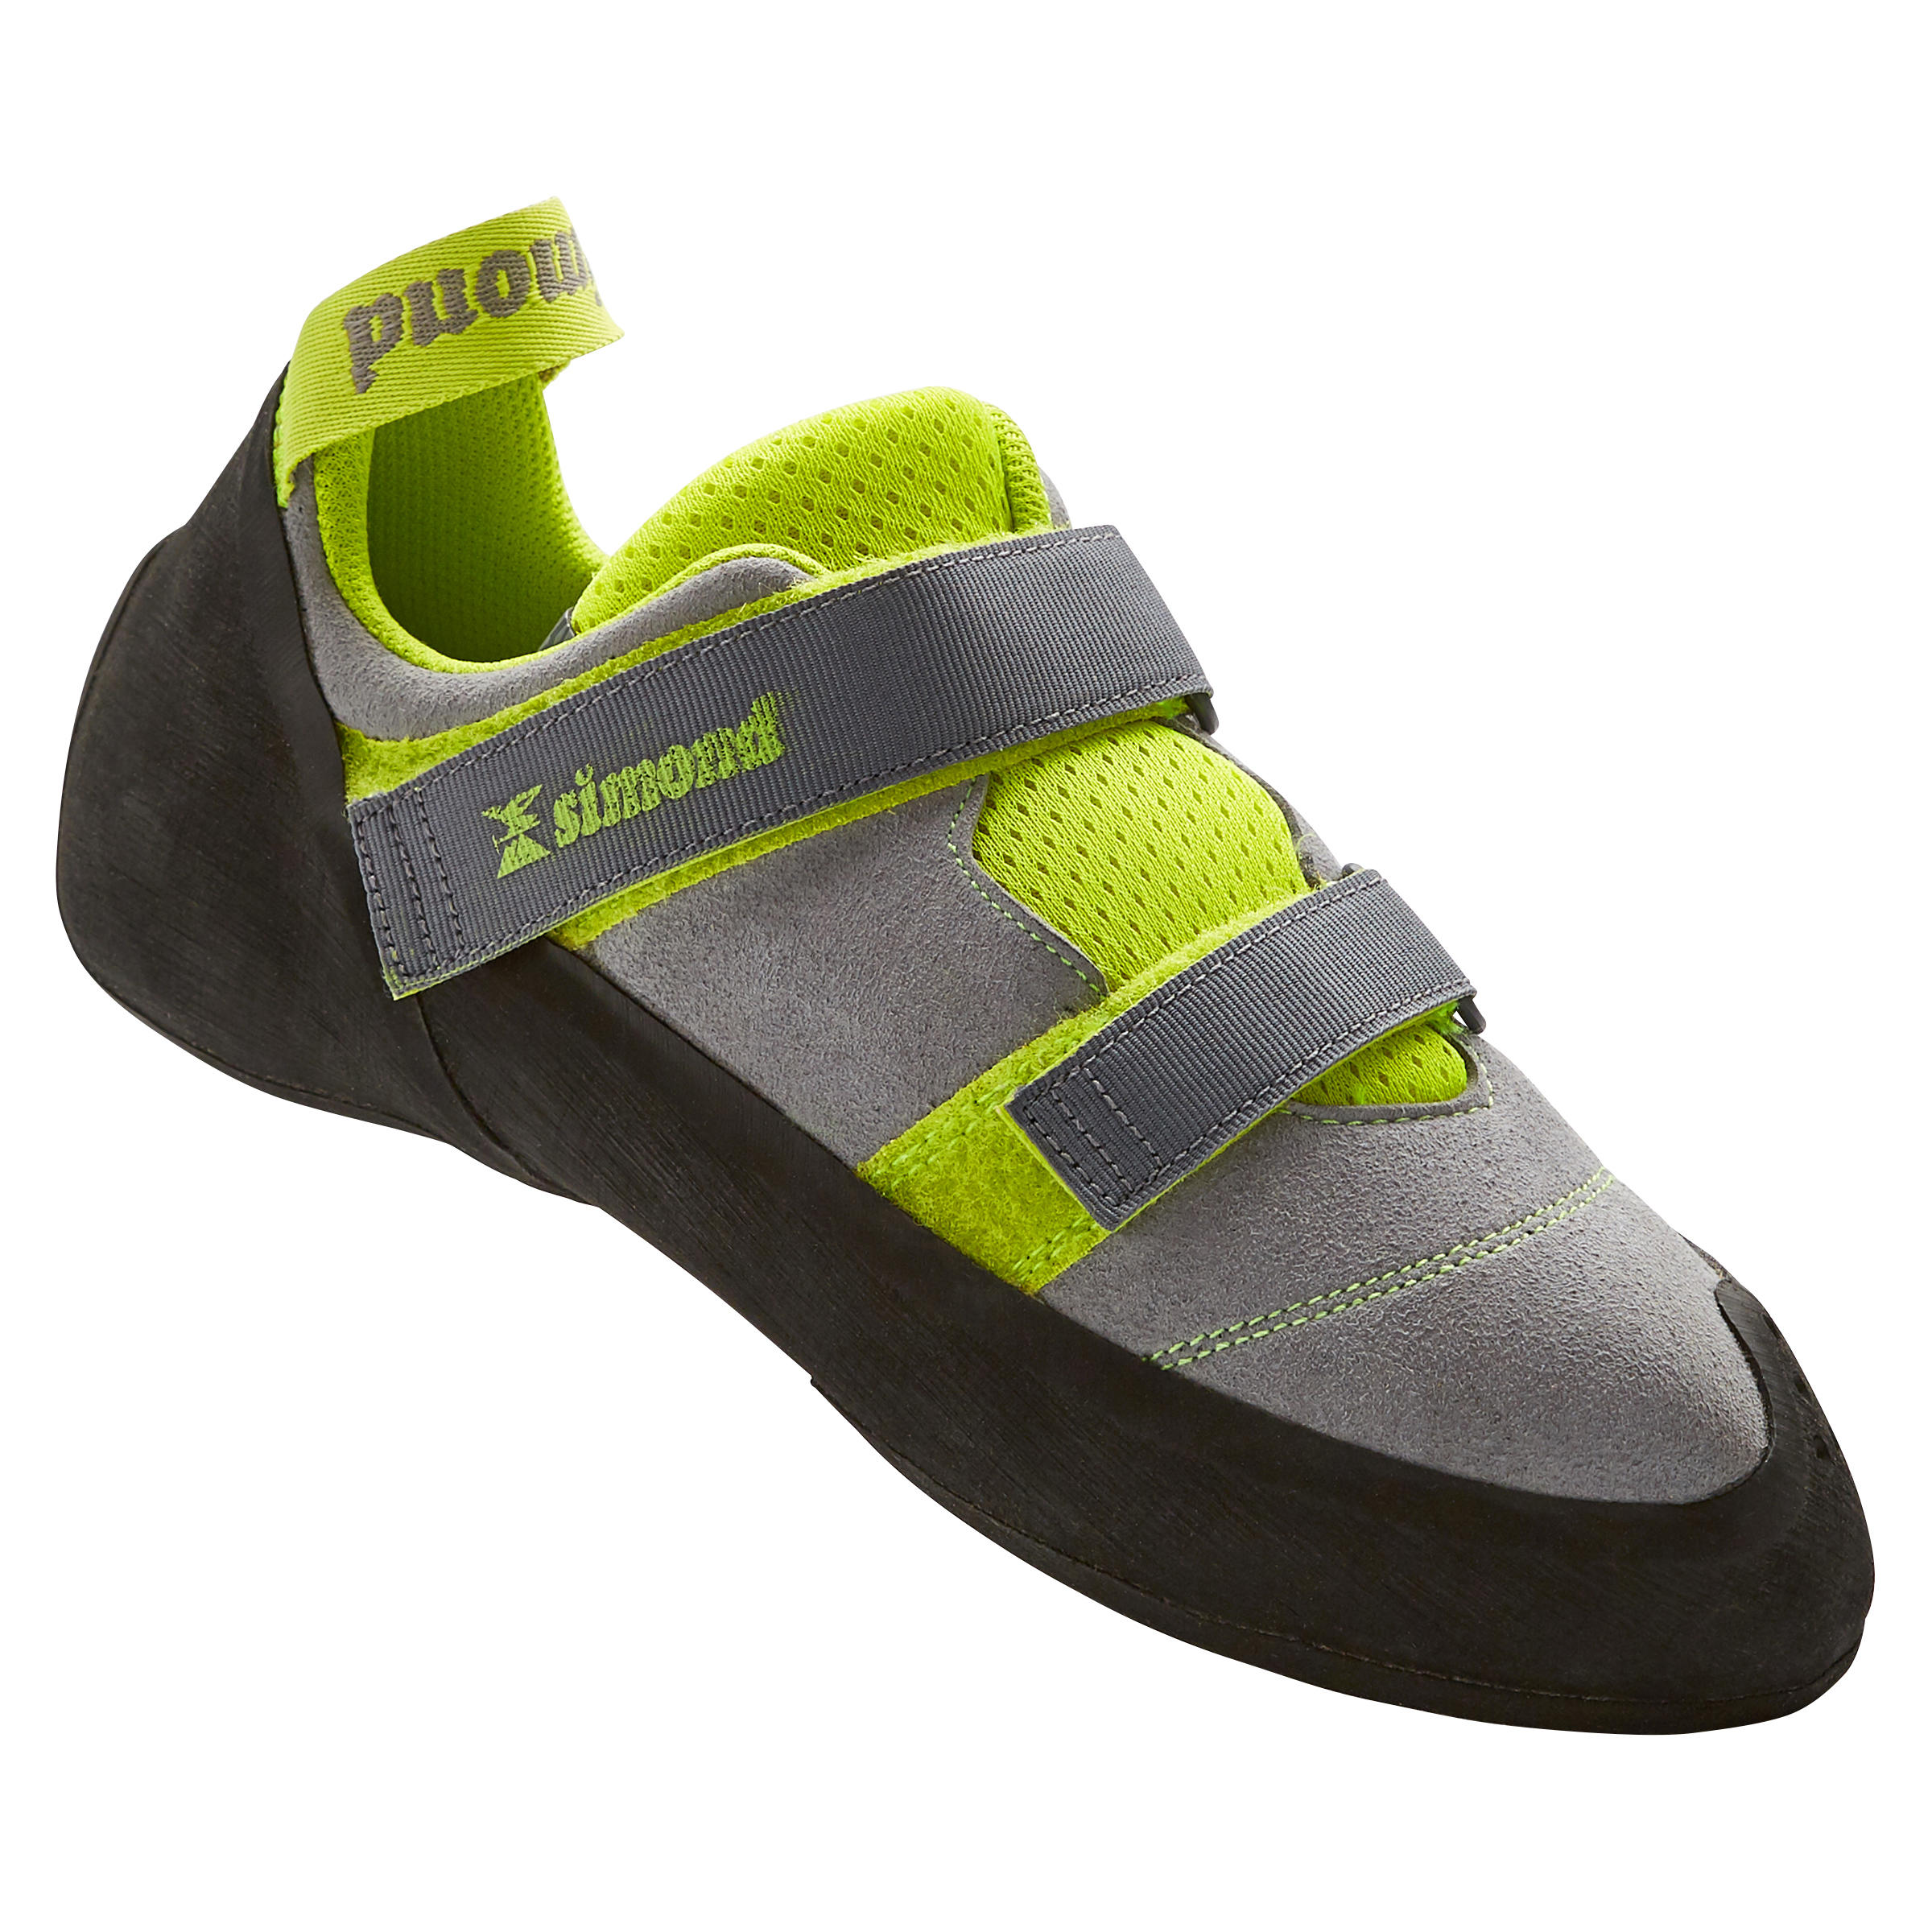 decathlon rock climbing shoes